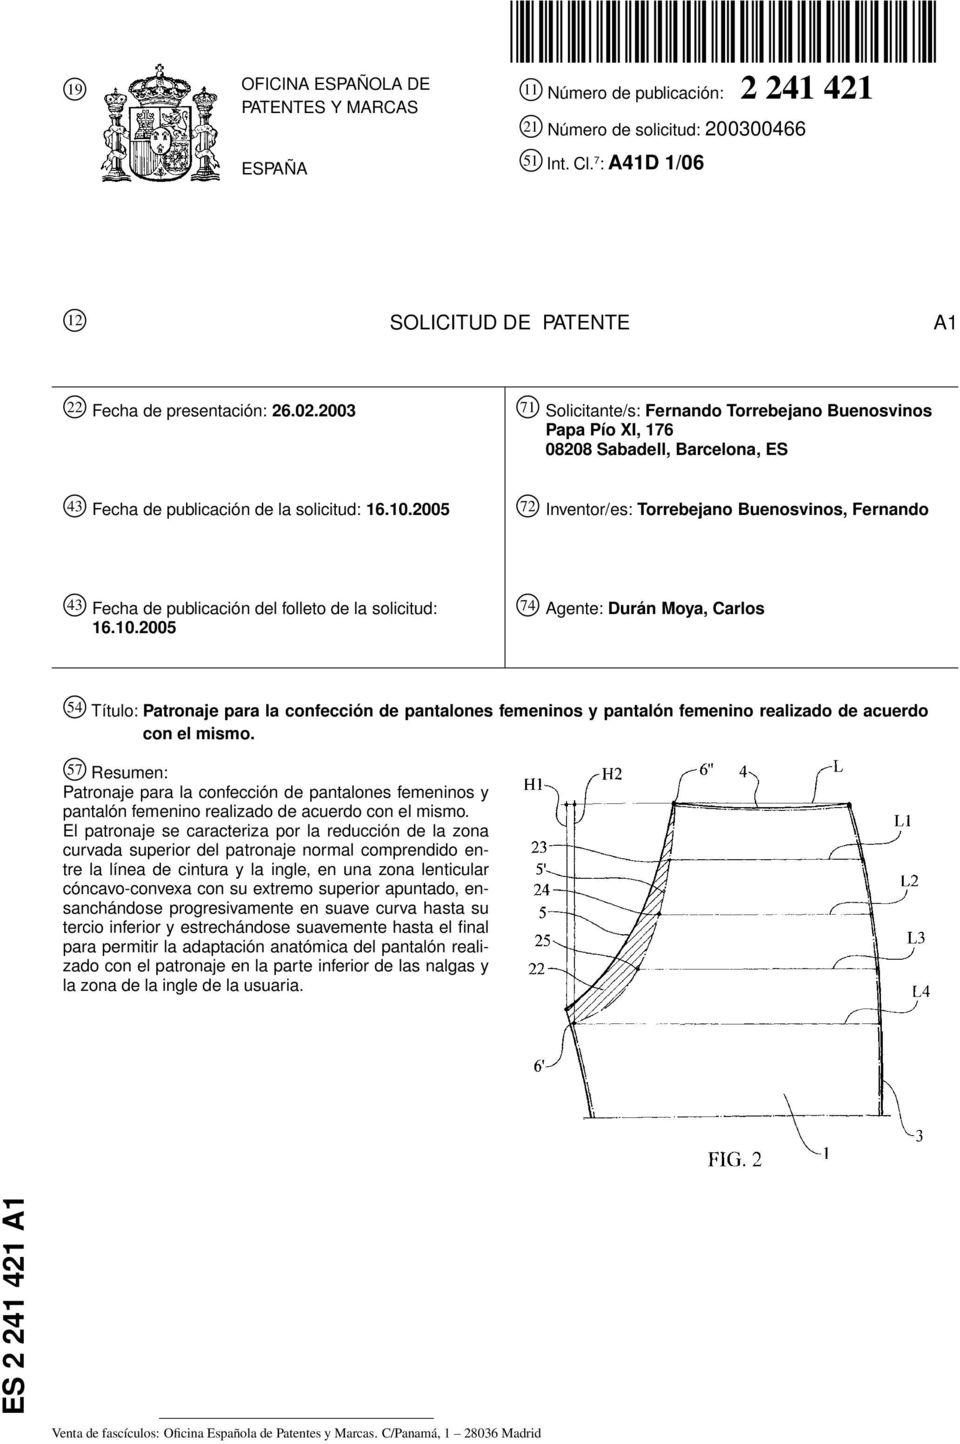 2005 72 Inventor/es: Torrebejano Buenosvinos, Fernando 43 Fecha de publicación del folleto de la solicitud: 16.10.